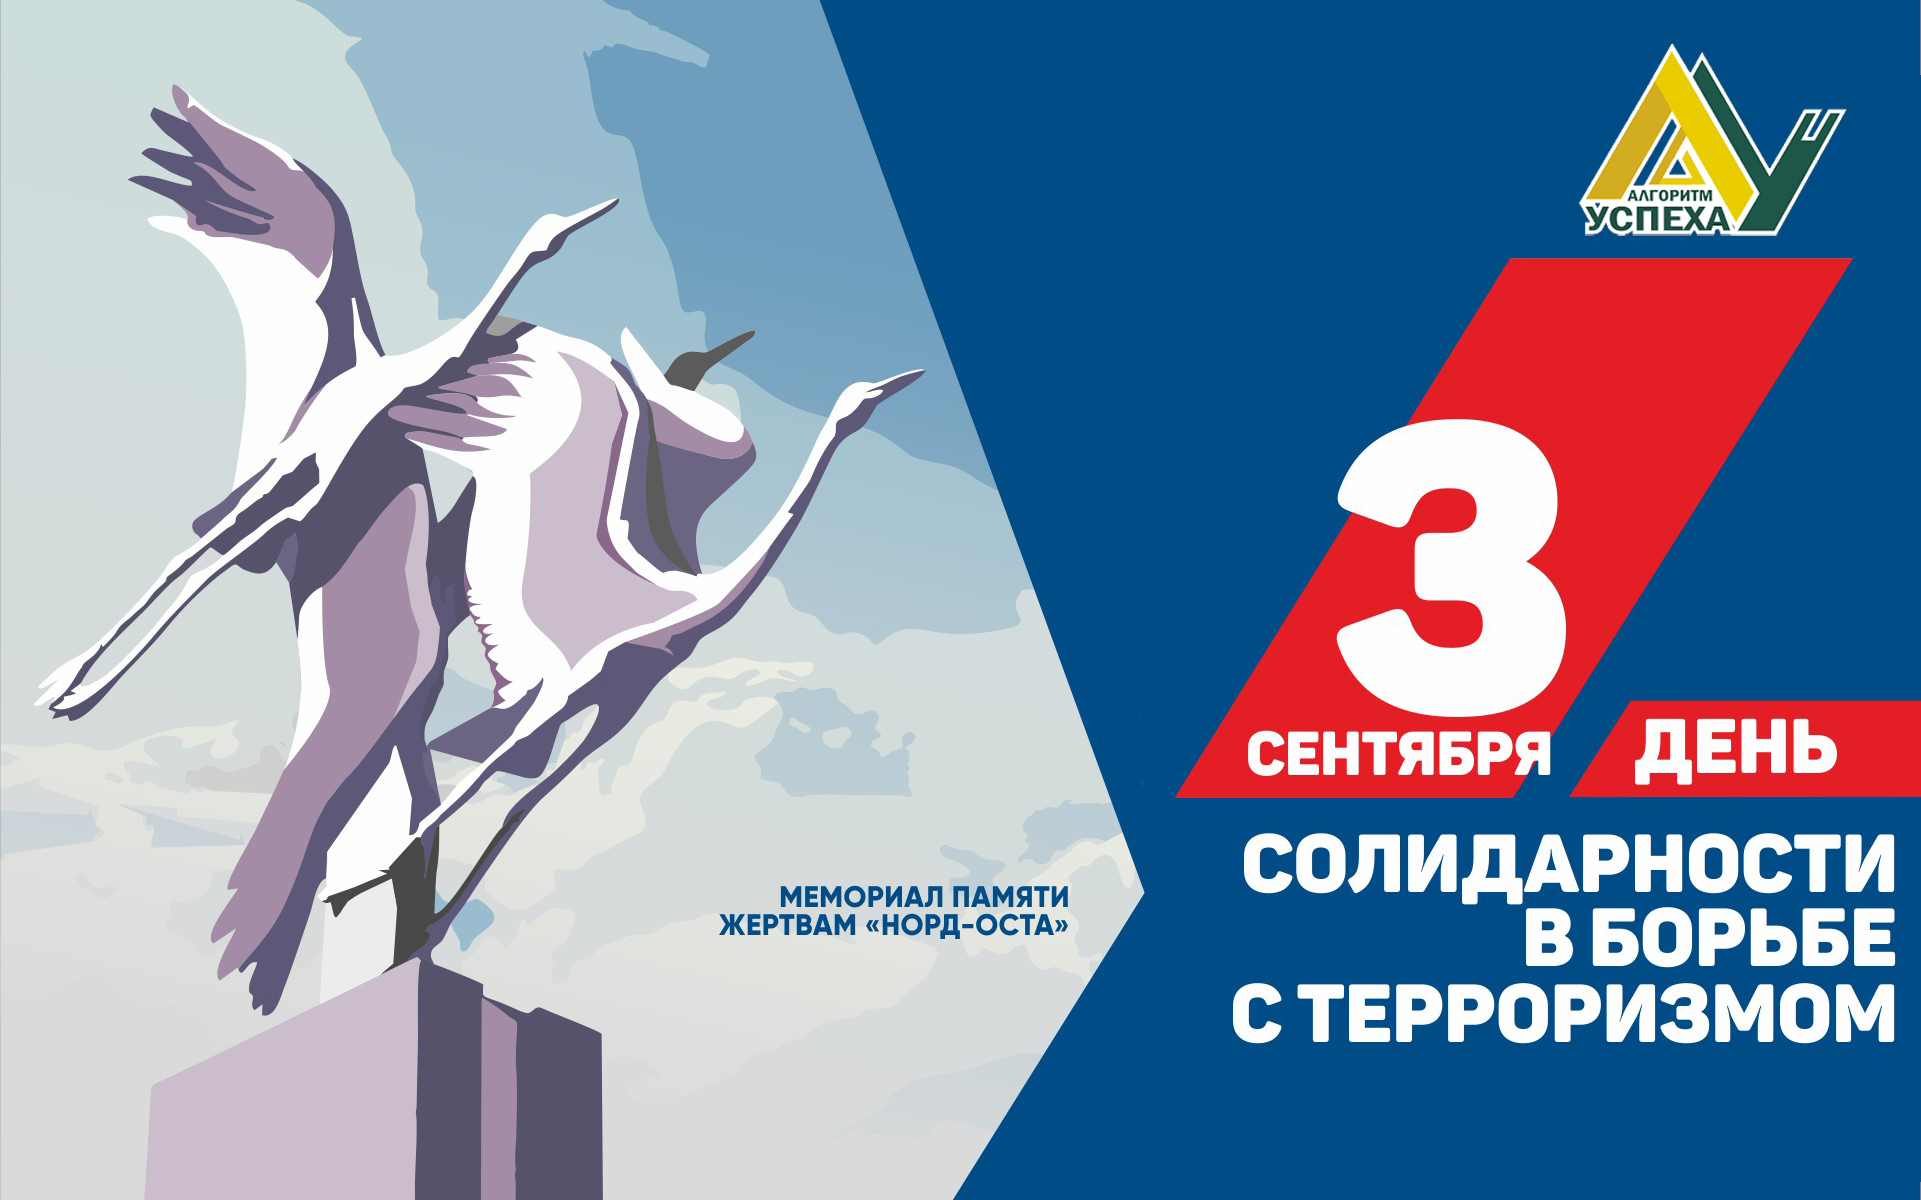 Ежегодно 3 сентября в России отмечается День солидарности в борьбе с терроризмом.